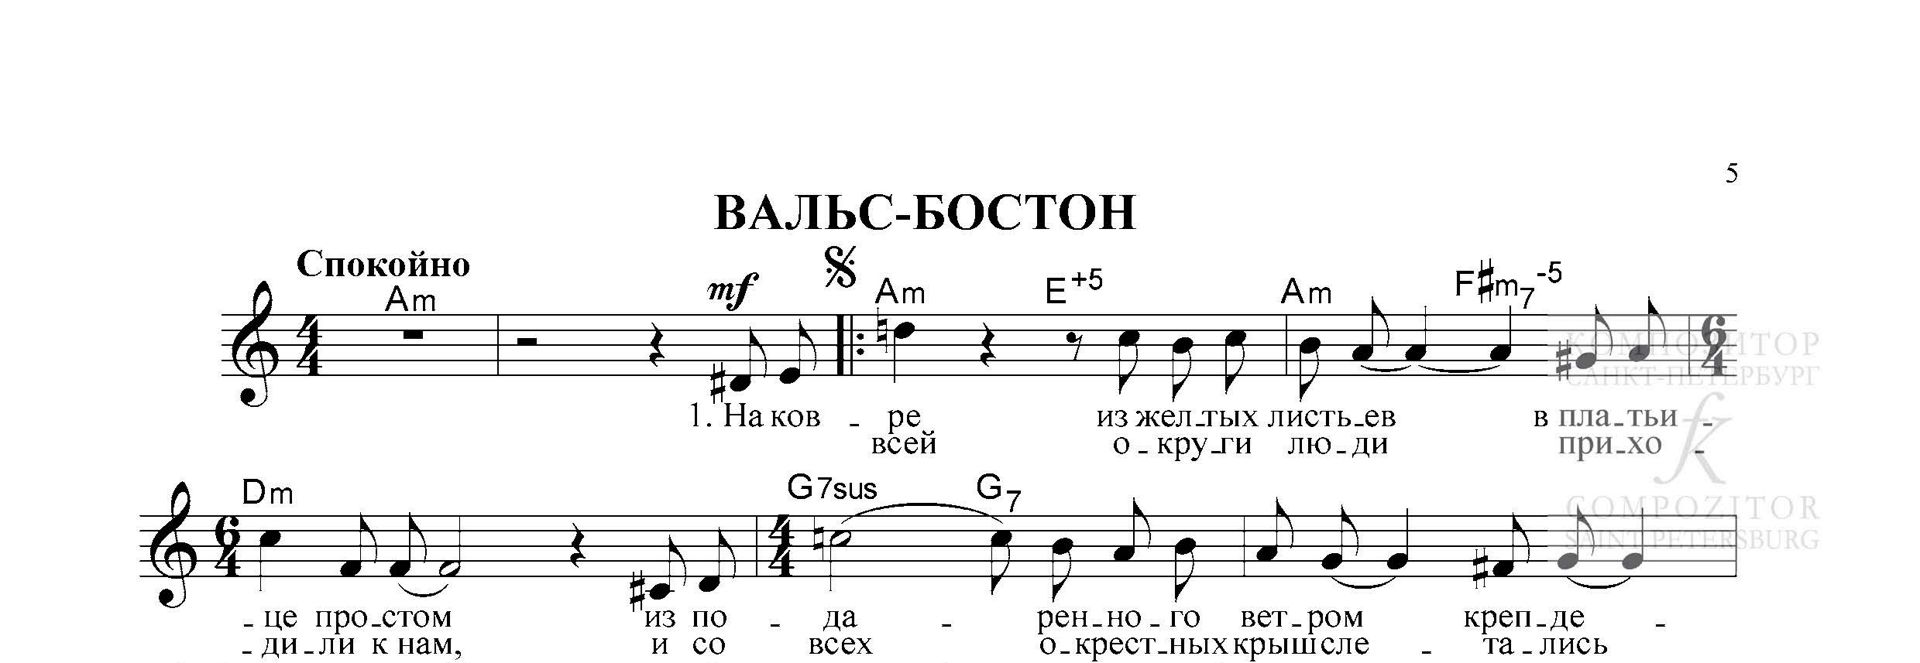 ВАЛЬС-БОСТОН. Александр Розенбаум. Легкое переложение для фортепиано (гитары).